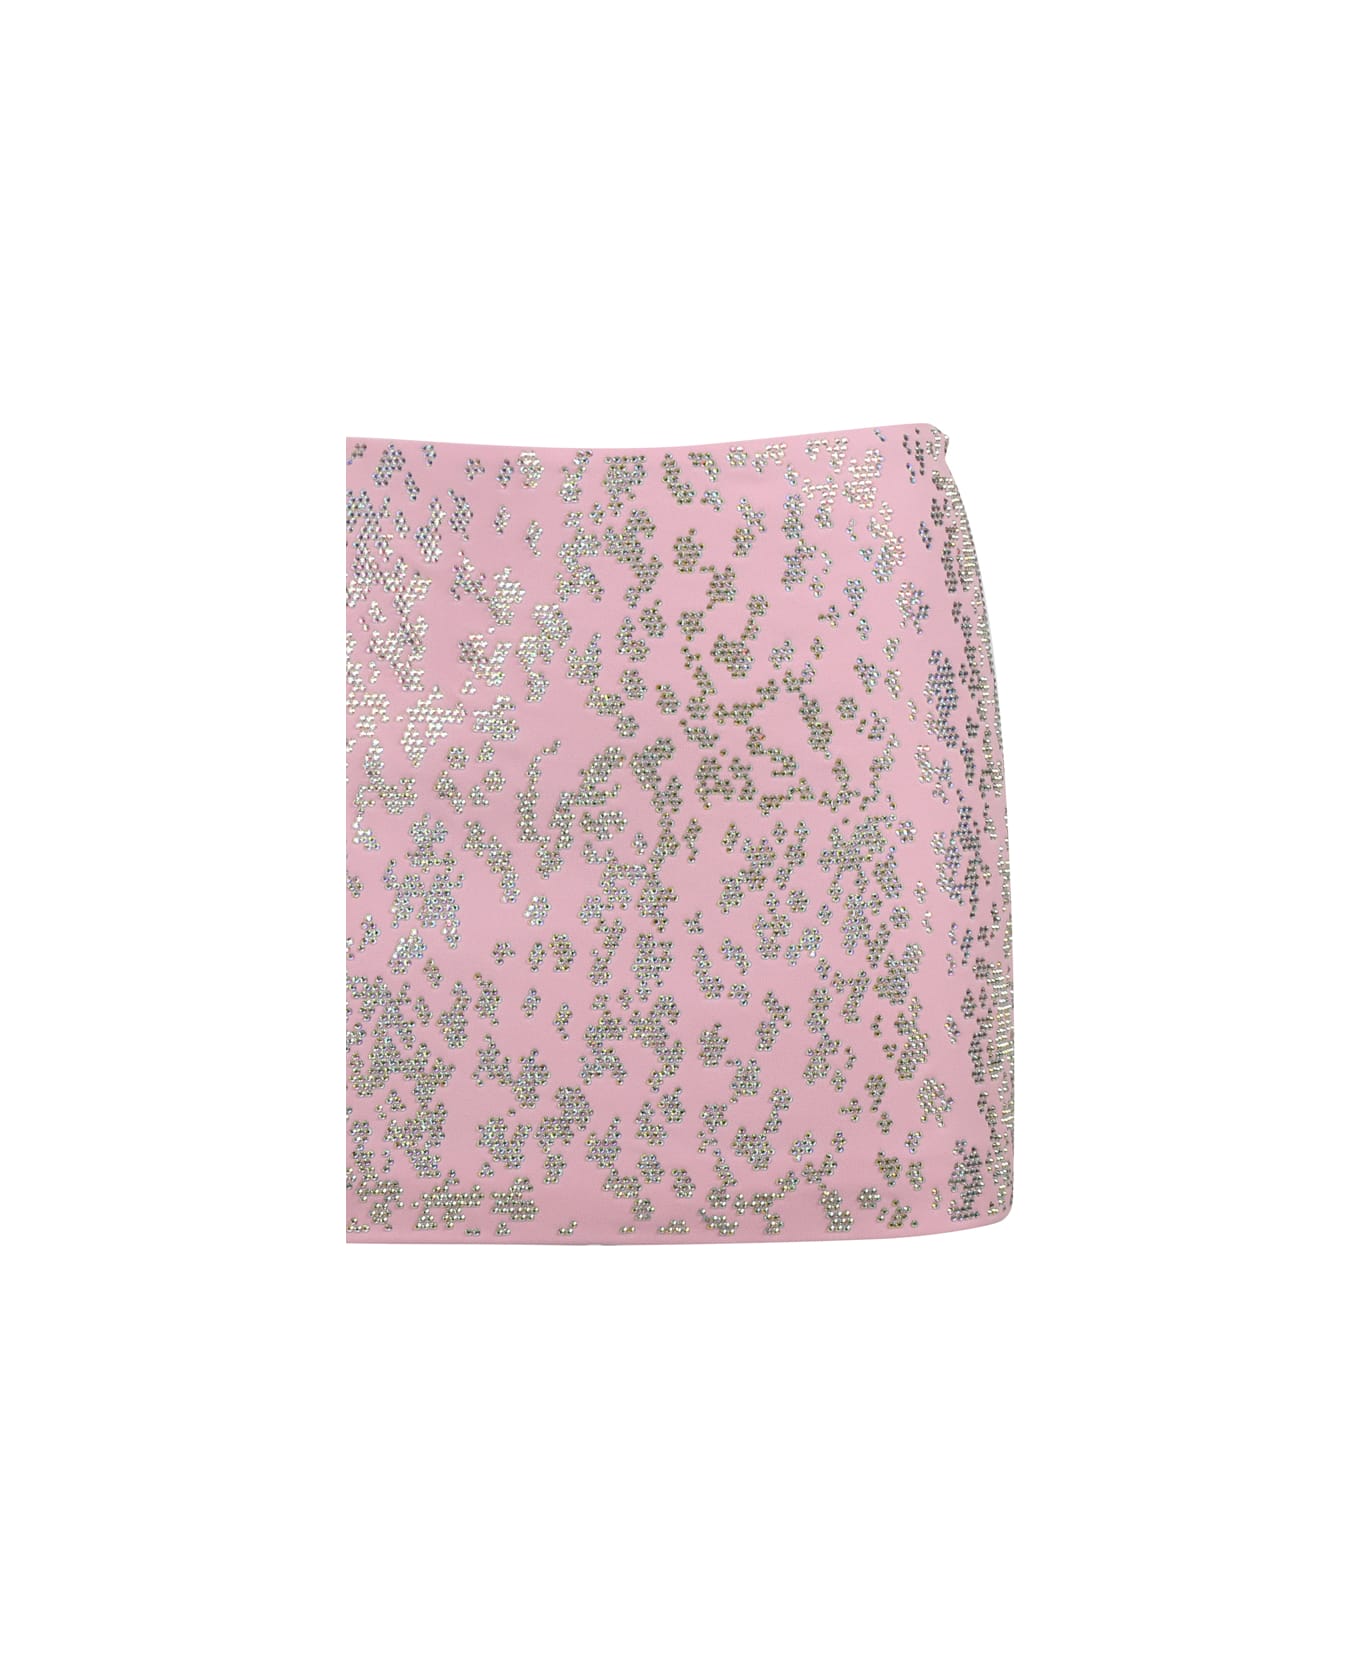 Blumarine Sequined Mini Skirt - Pink